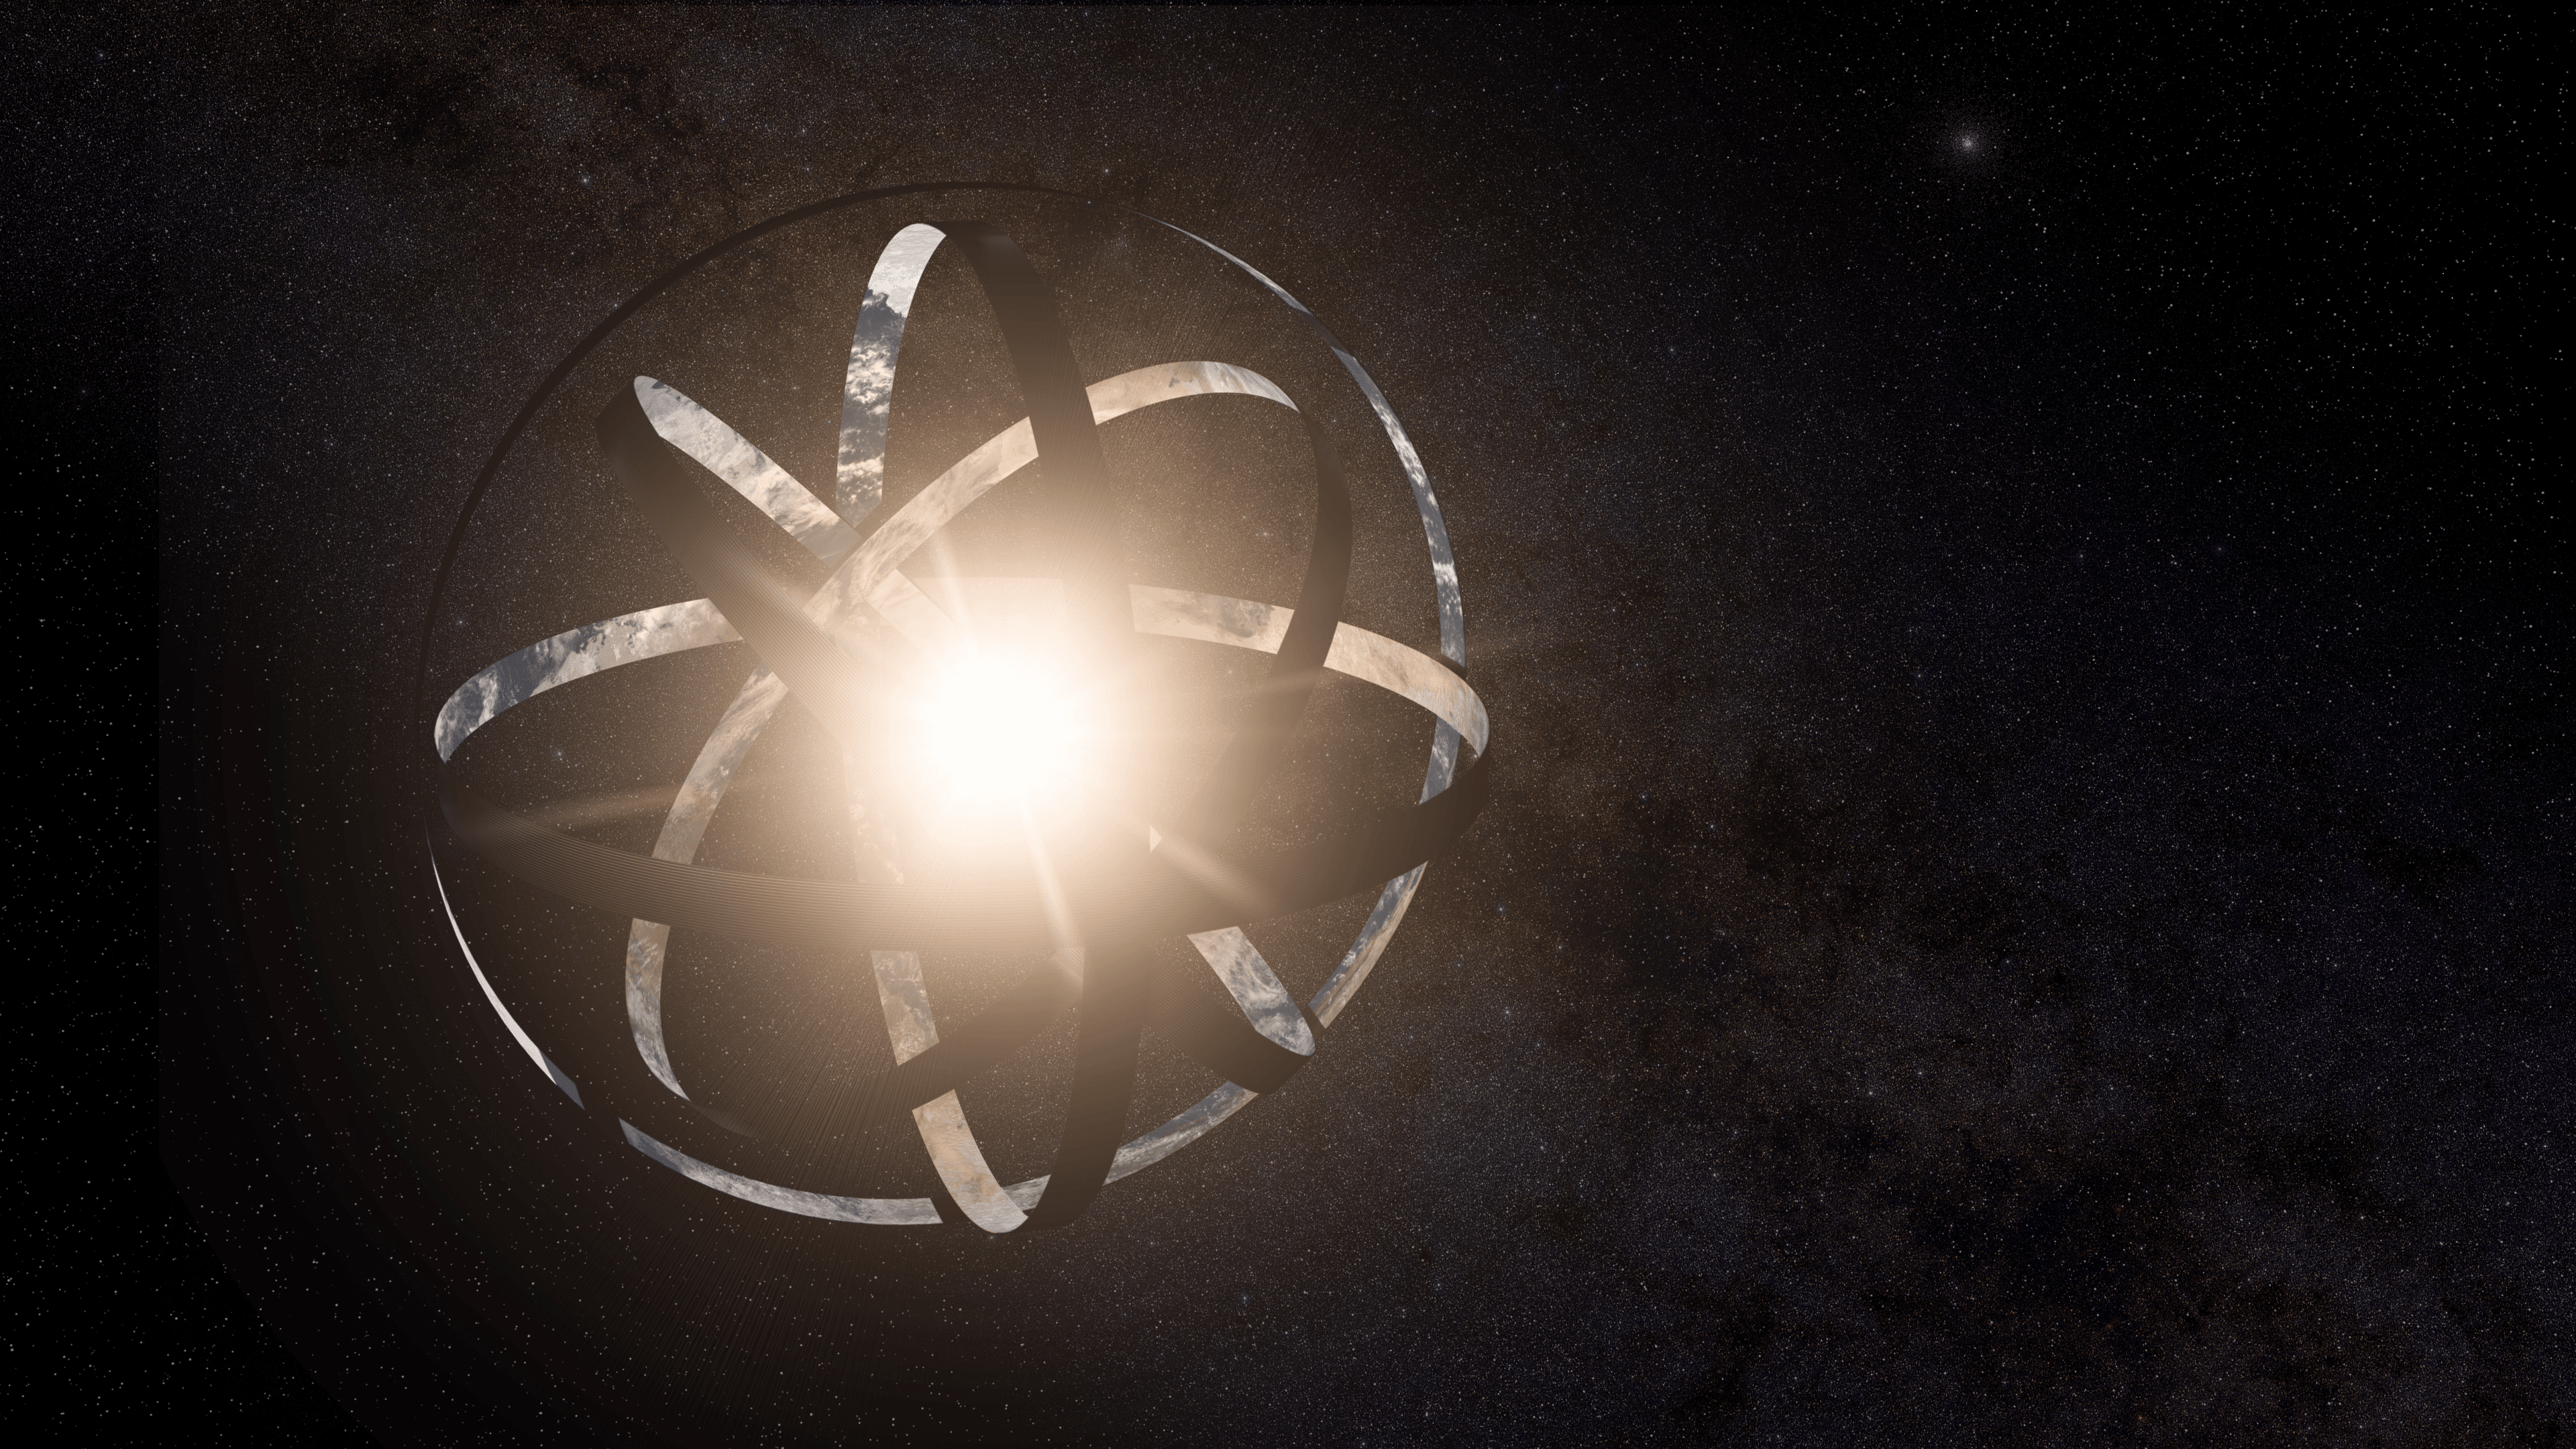 כדור דייסון הוא מגה-מבנה תיאורטי שיקיף כוכב ויאסוף את אורו כדי להשתמש בו כאנרגיה. קווין גיל/פליקר, CC BY